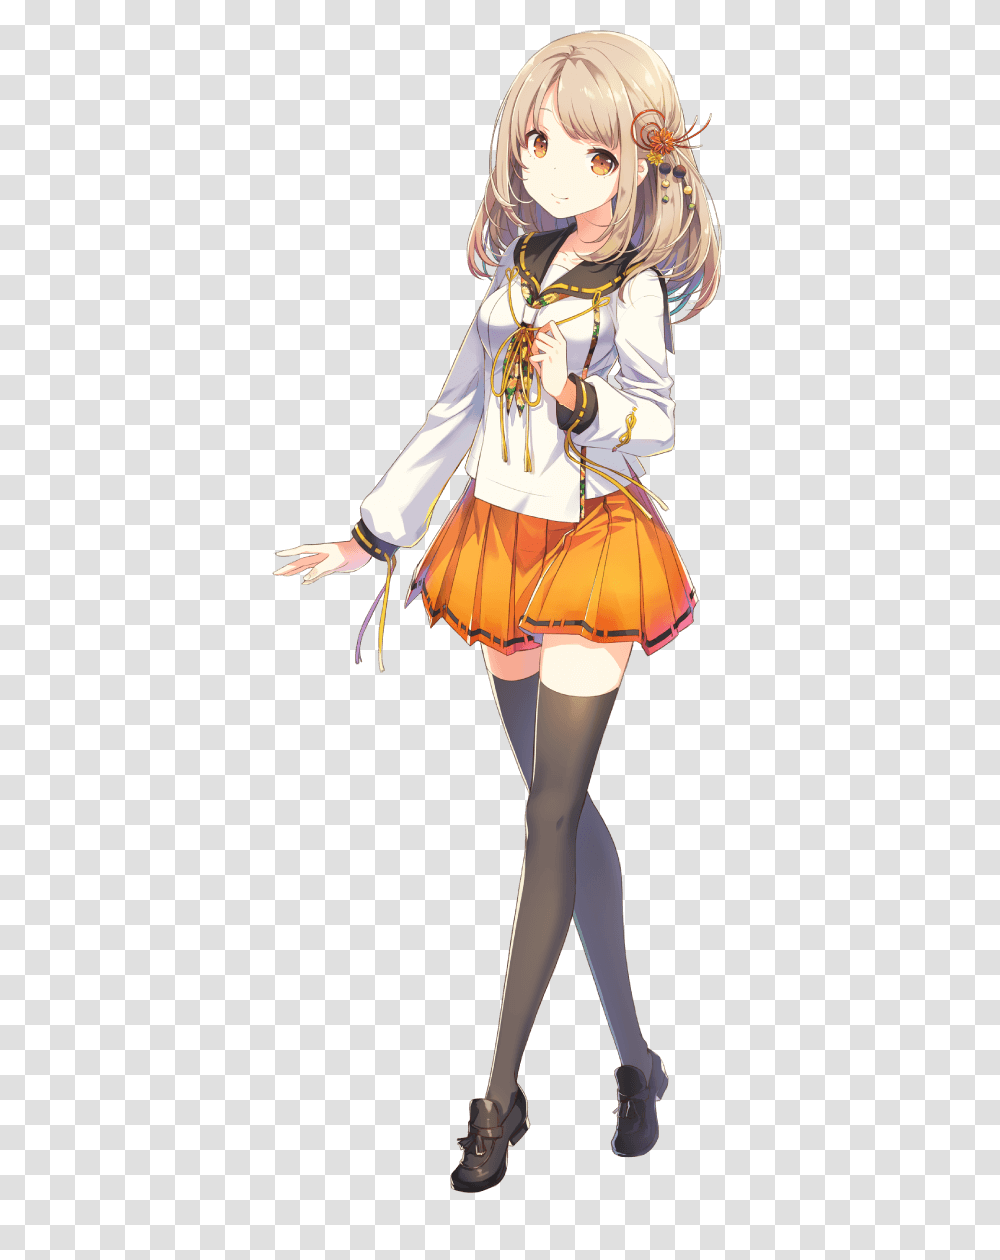 Anime Girl, Fantasy, Skirt, Costume Transparent Png